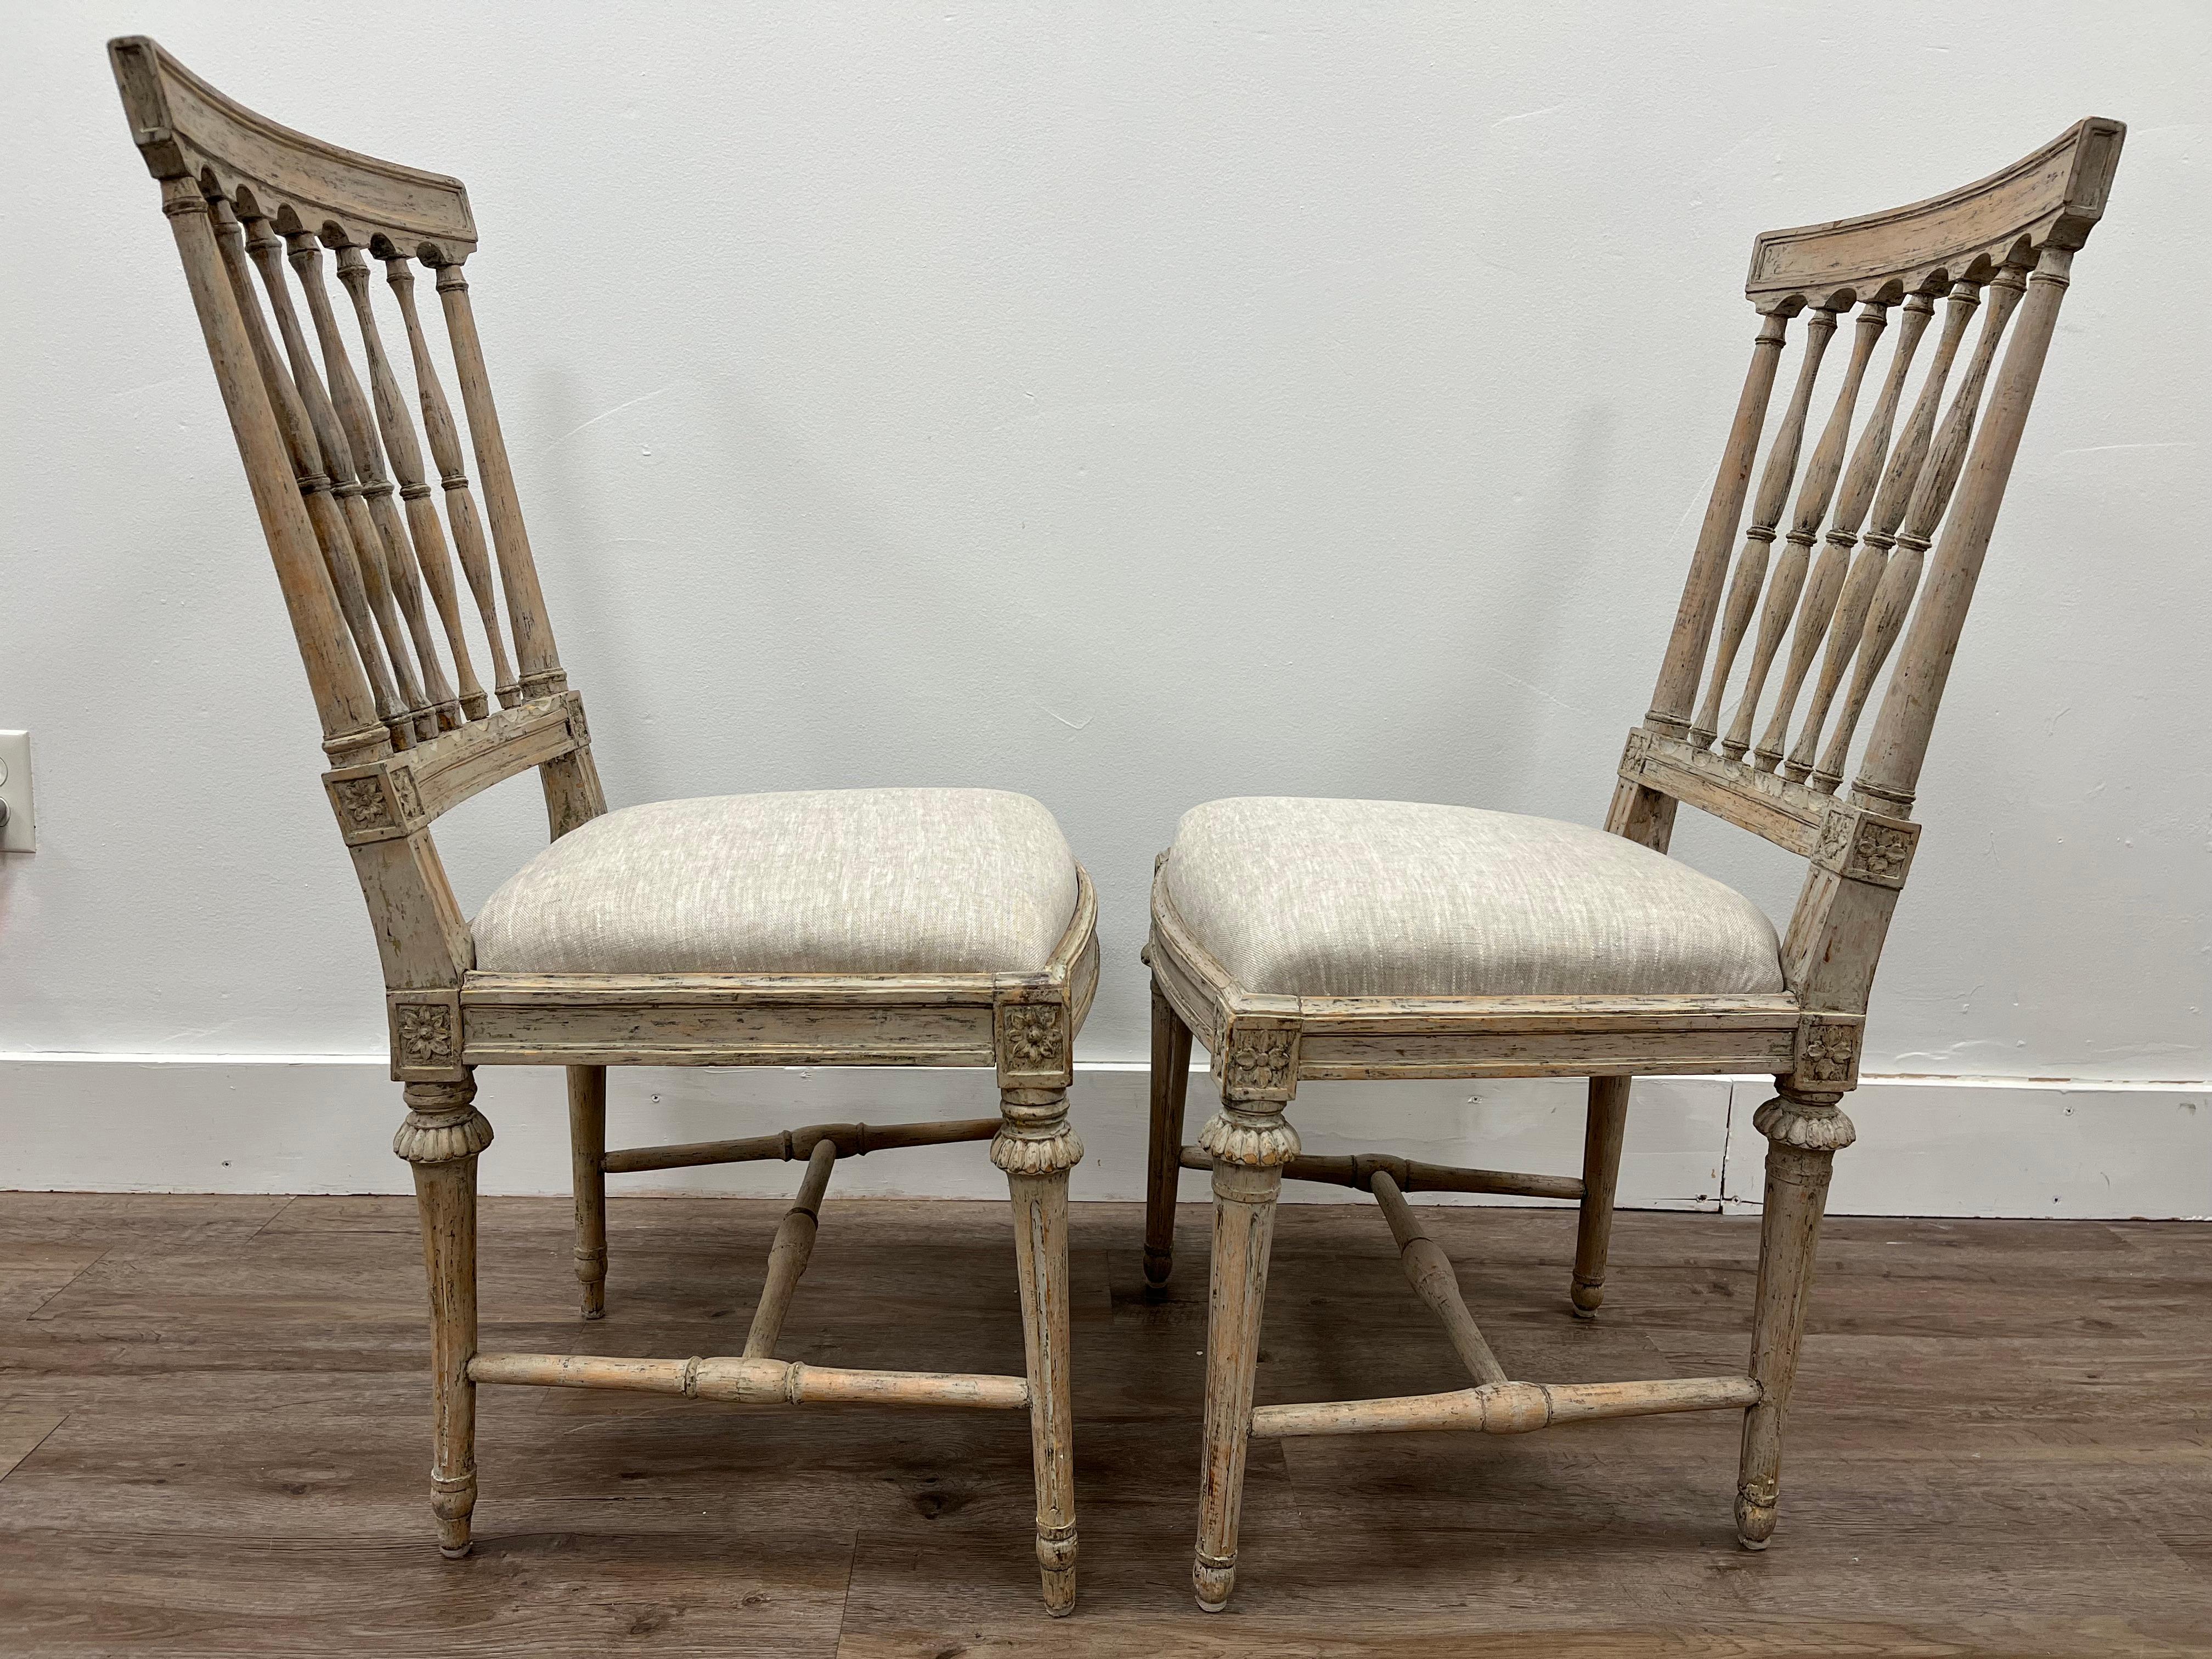 Deux chaises gustaviennes suédoises similaires fabriquées à Stockholm. Une chaise de Johan Erik Hollander (1748-1813) et signée IEH. L'autre chaise a été réalisée par John Hammarstrom (actif 1794-1812) et signée IHS. L'une des chaises a conservé son